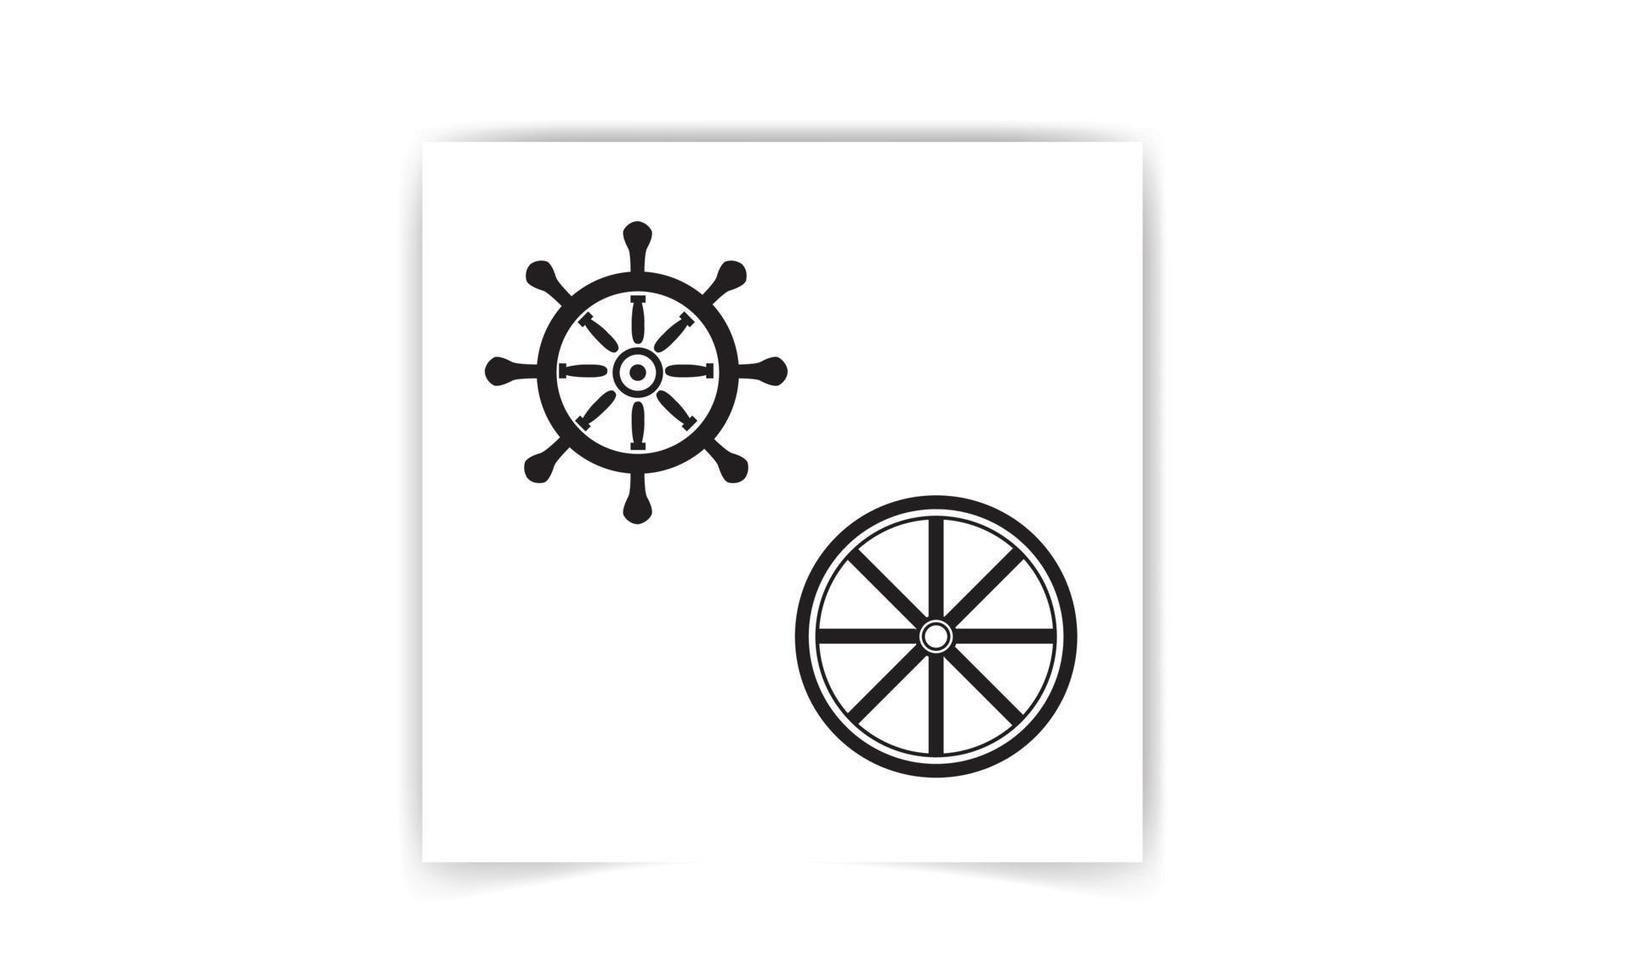 silueta de una rueda de bicicleta, rueda de barco sobre fondo blanco. diseño de iconos náuticos. vector